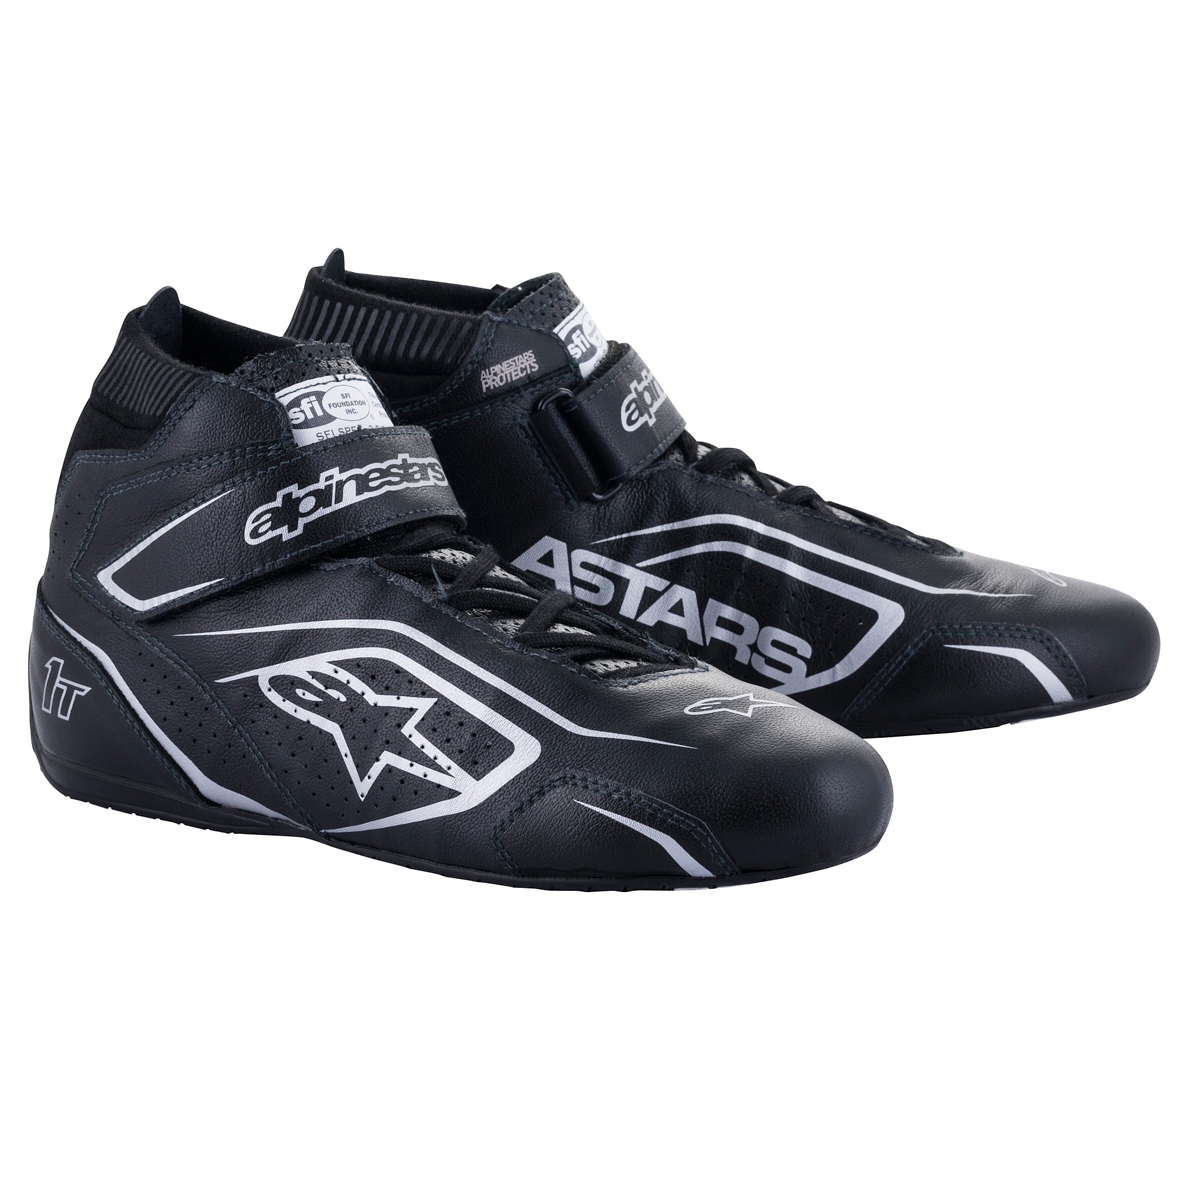 Alpinestars 2710122-119-10 - Shoe Tech-1T V3 Black / Silver Size 10